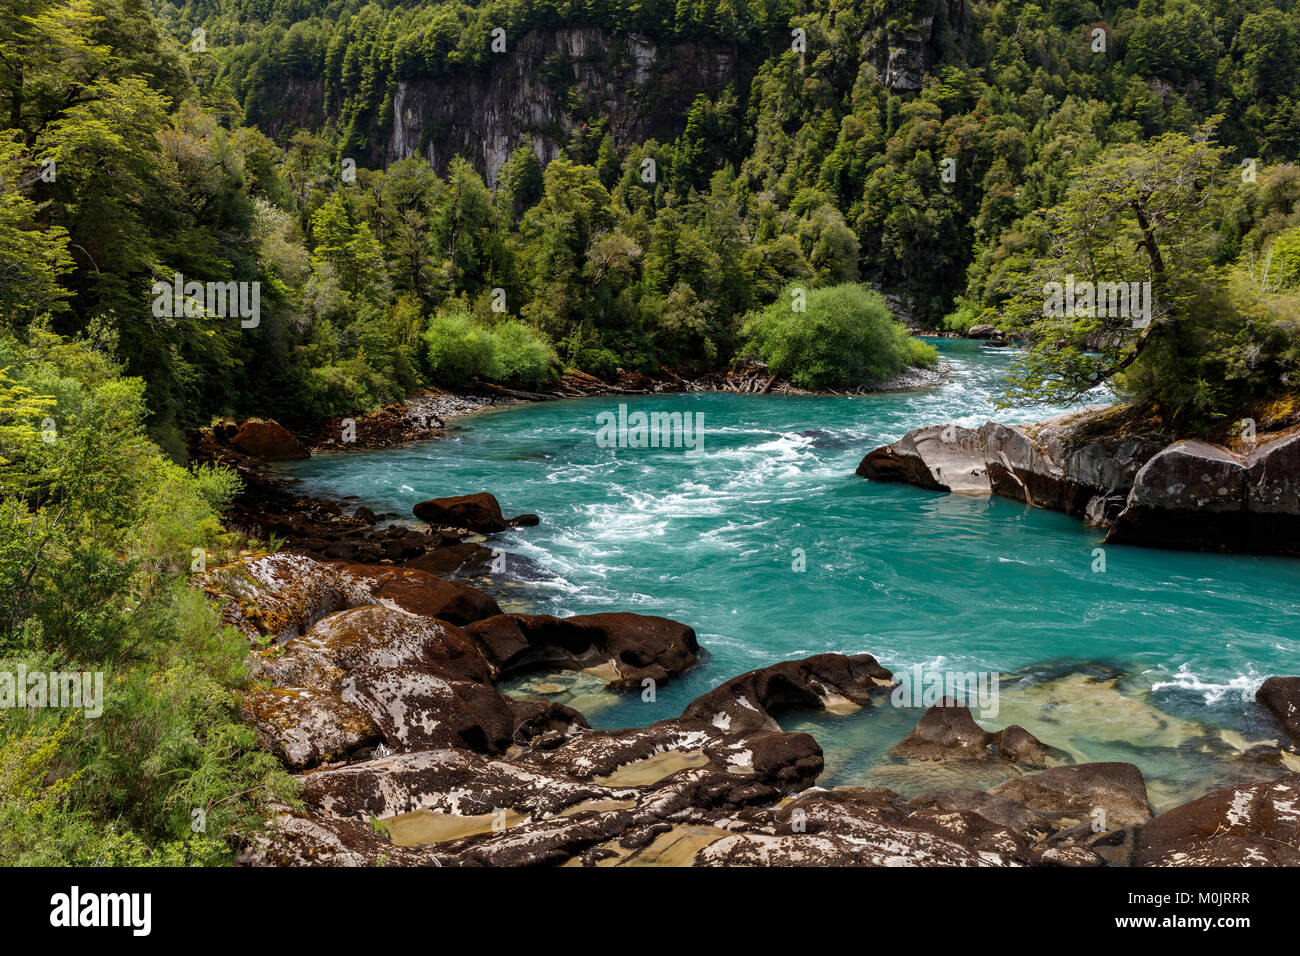 Turquoise montaña río Futalefu fluye a través de la densa vegetación, el Parque Nacional Los Alerces, región de los Lagos, Patagonia Foto de stock